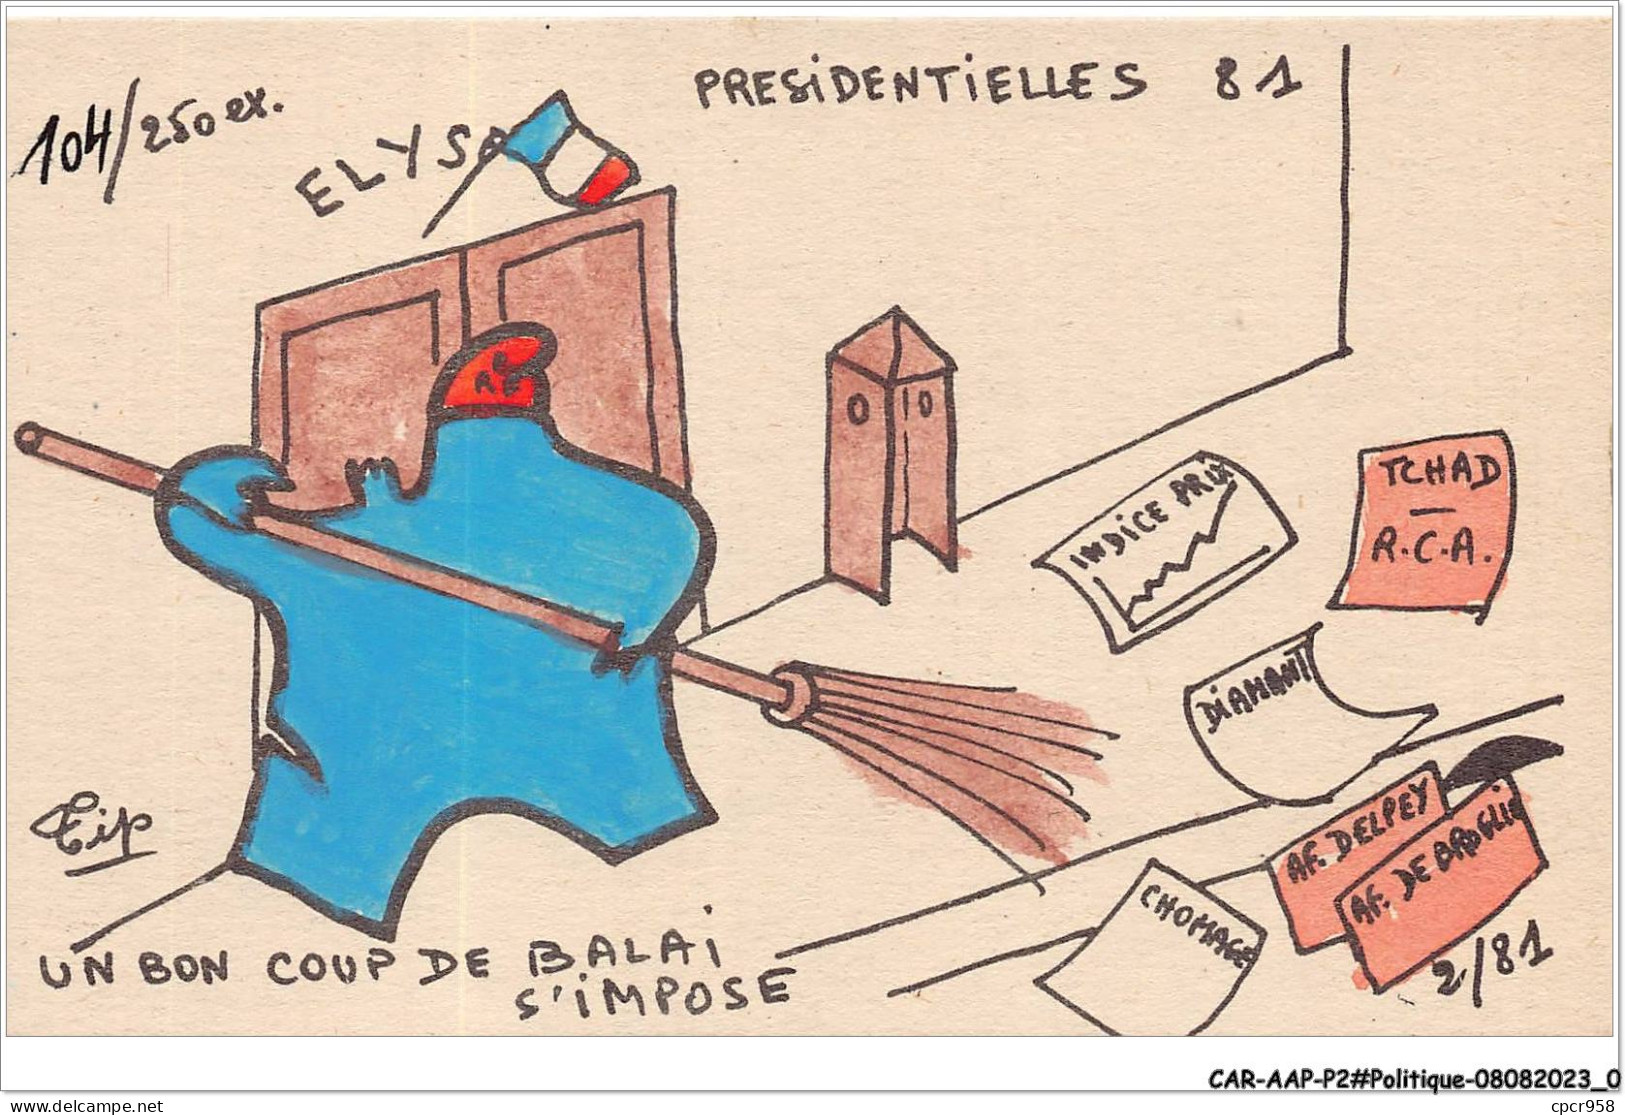 CAR-AAPP2-0083 - POLITIQUE - Presidentielles 81 - Un Bon Coup De Palais S'impose - Partidos Politicos & Elecciones